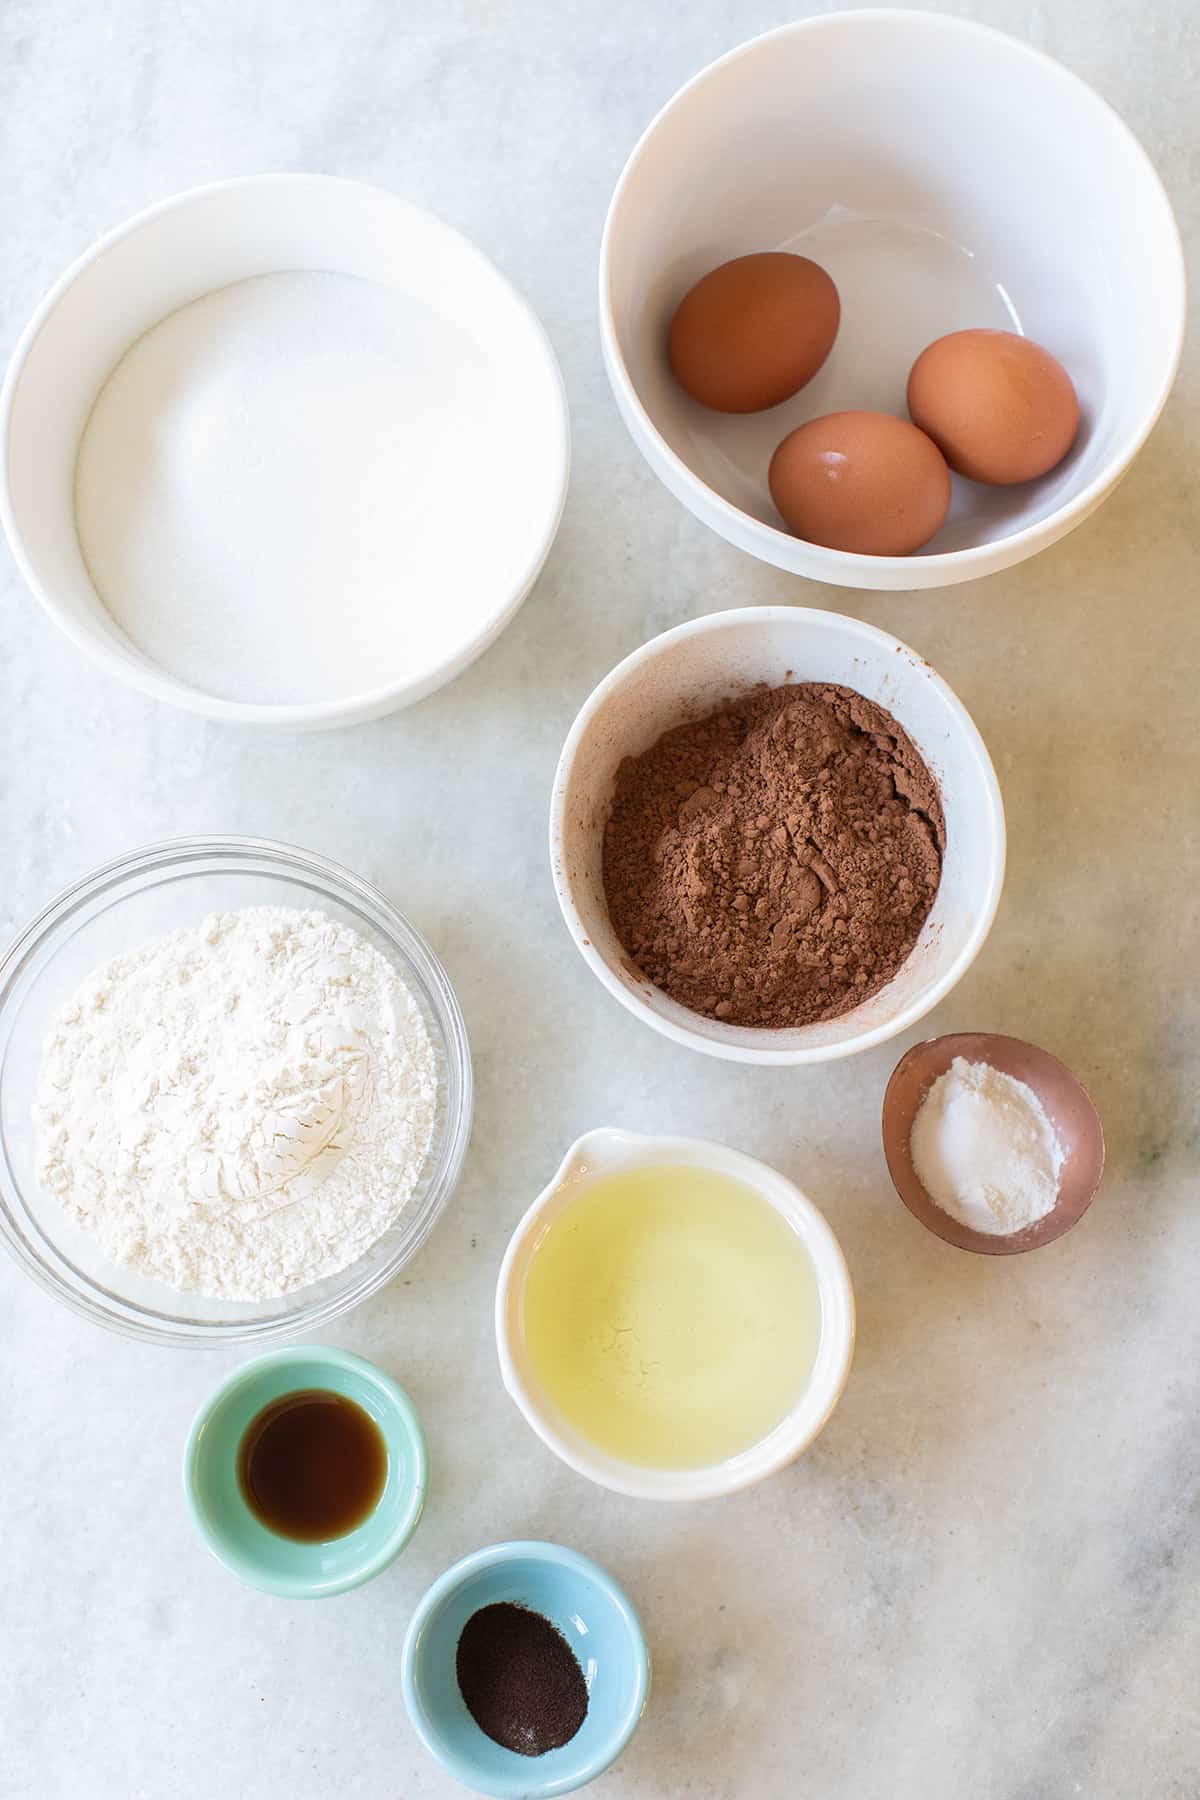 ingredients in bowls to make chocolate crinkle cookies